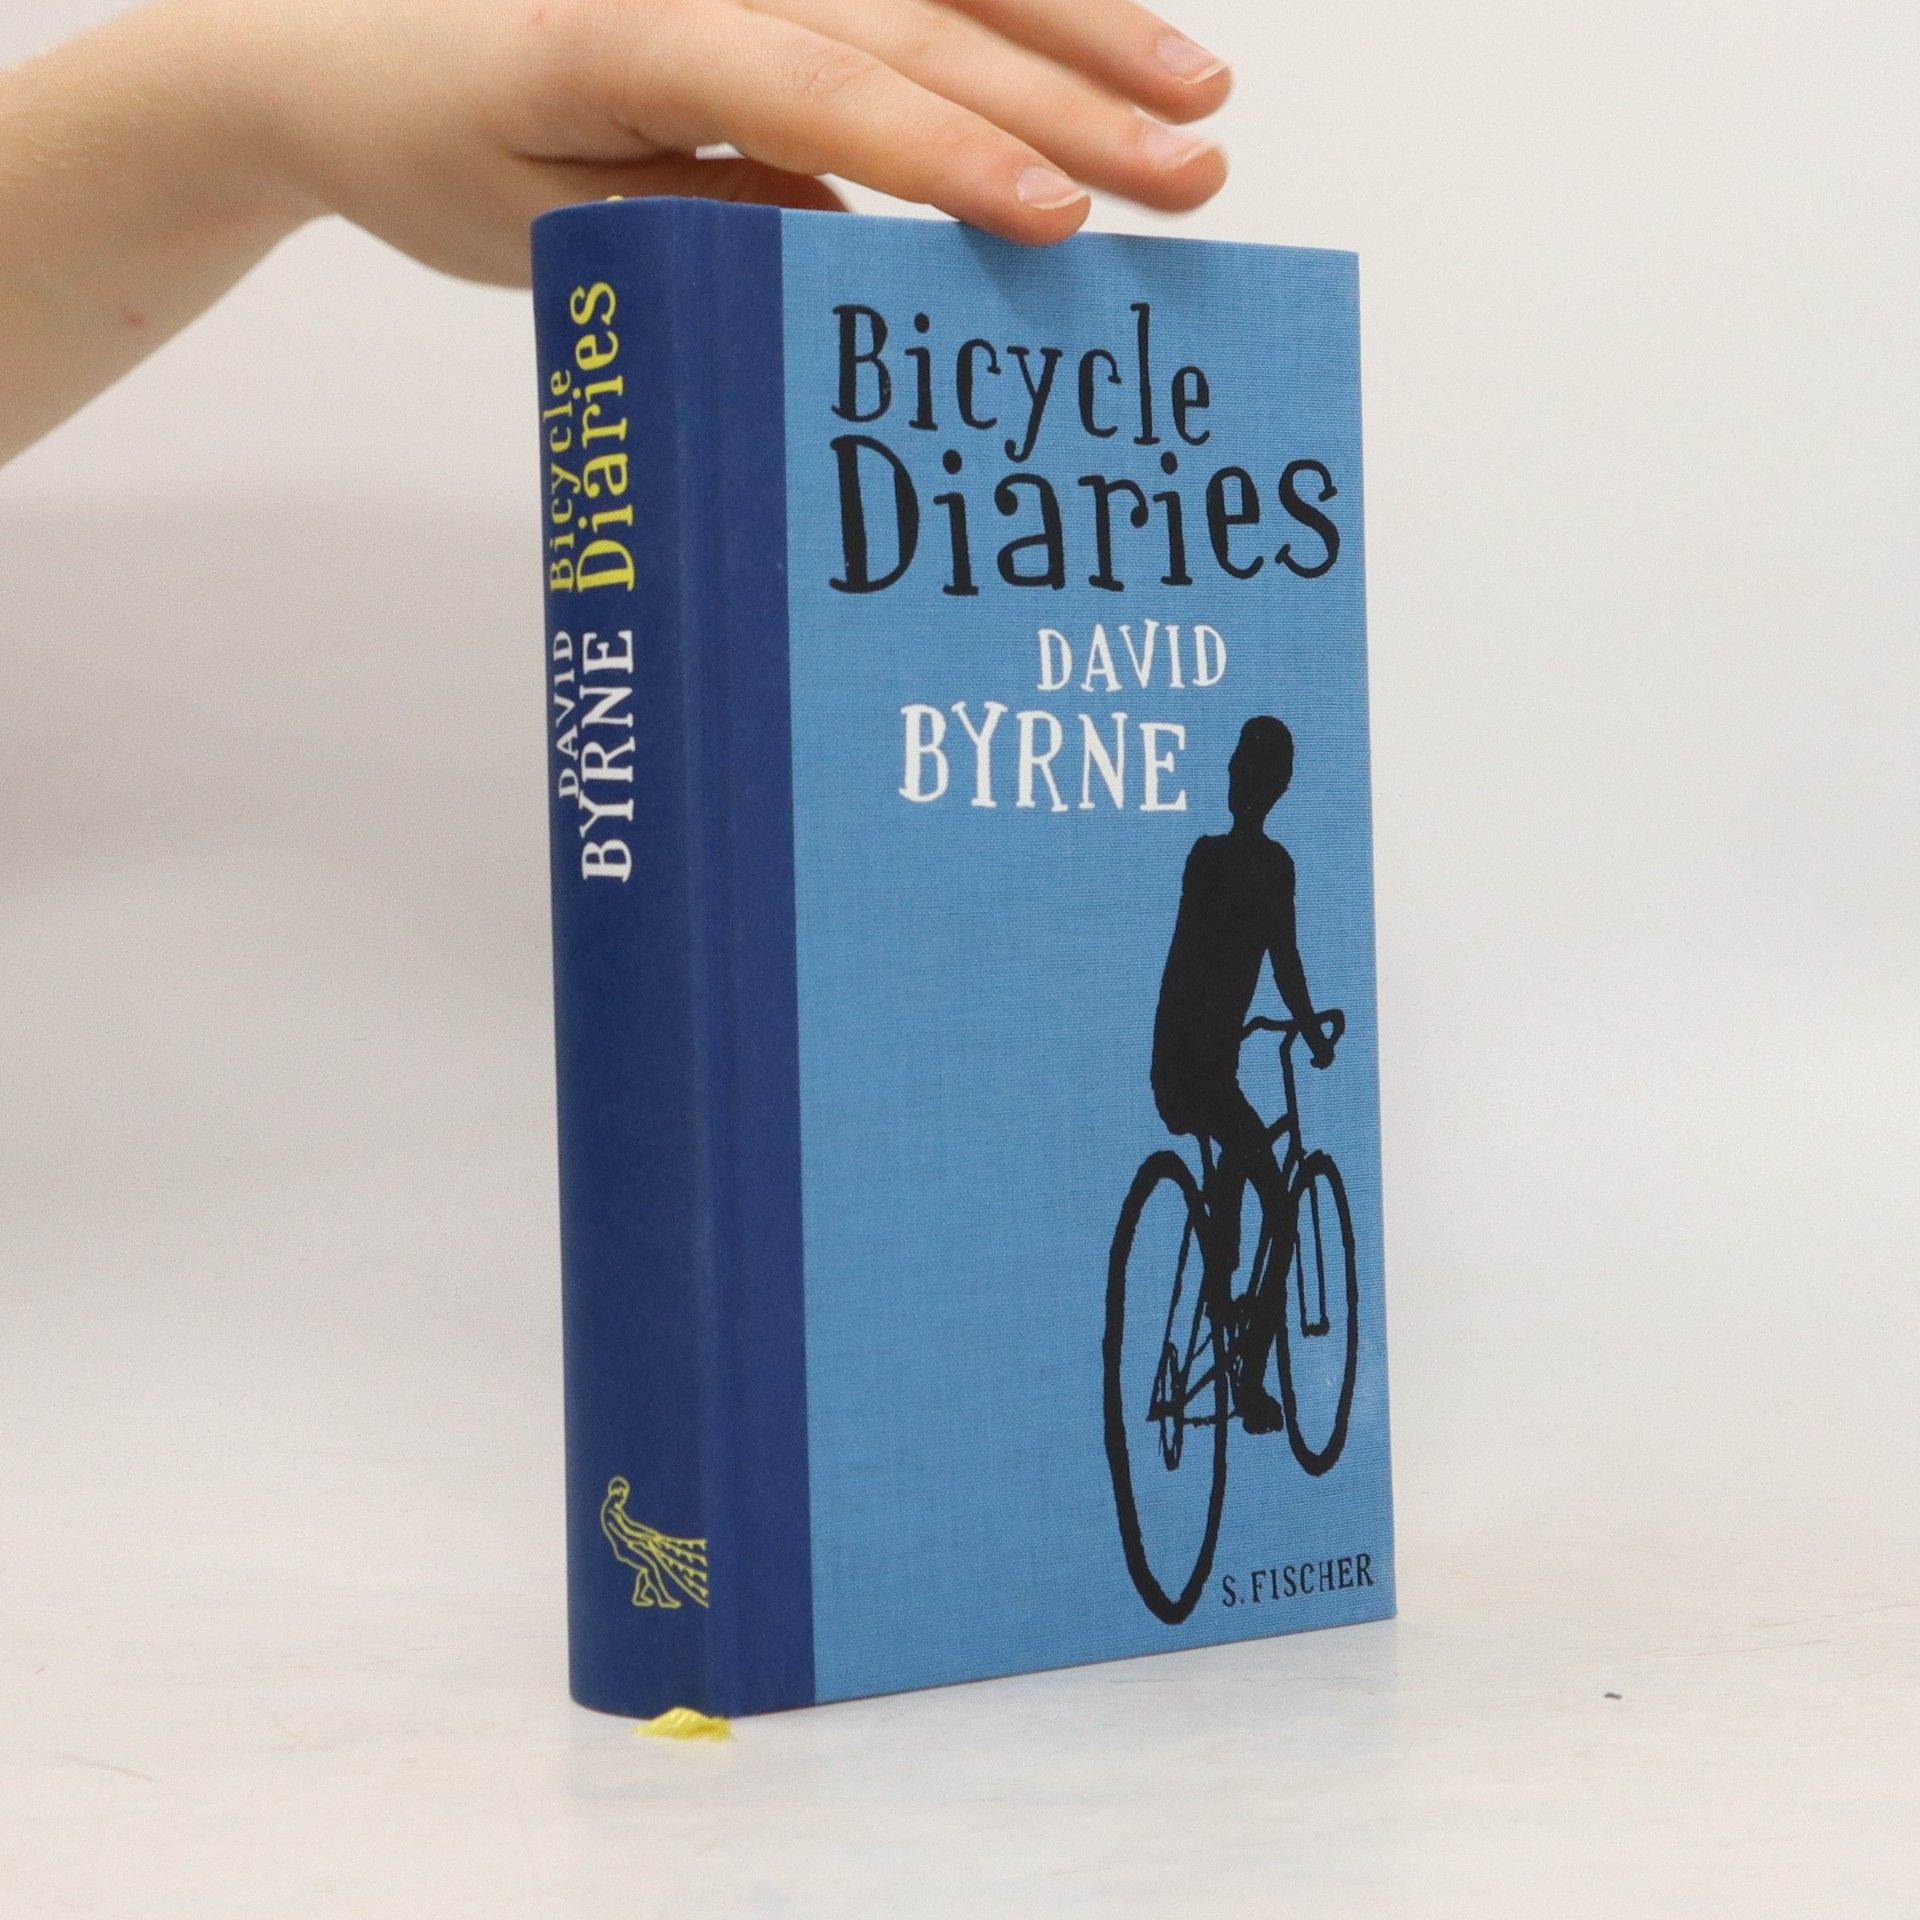 Bicycle diaries - David Byrne